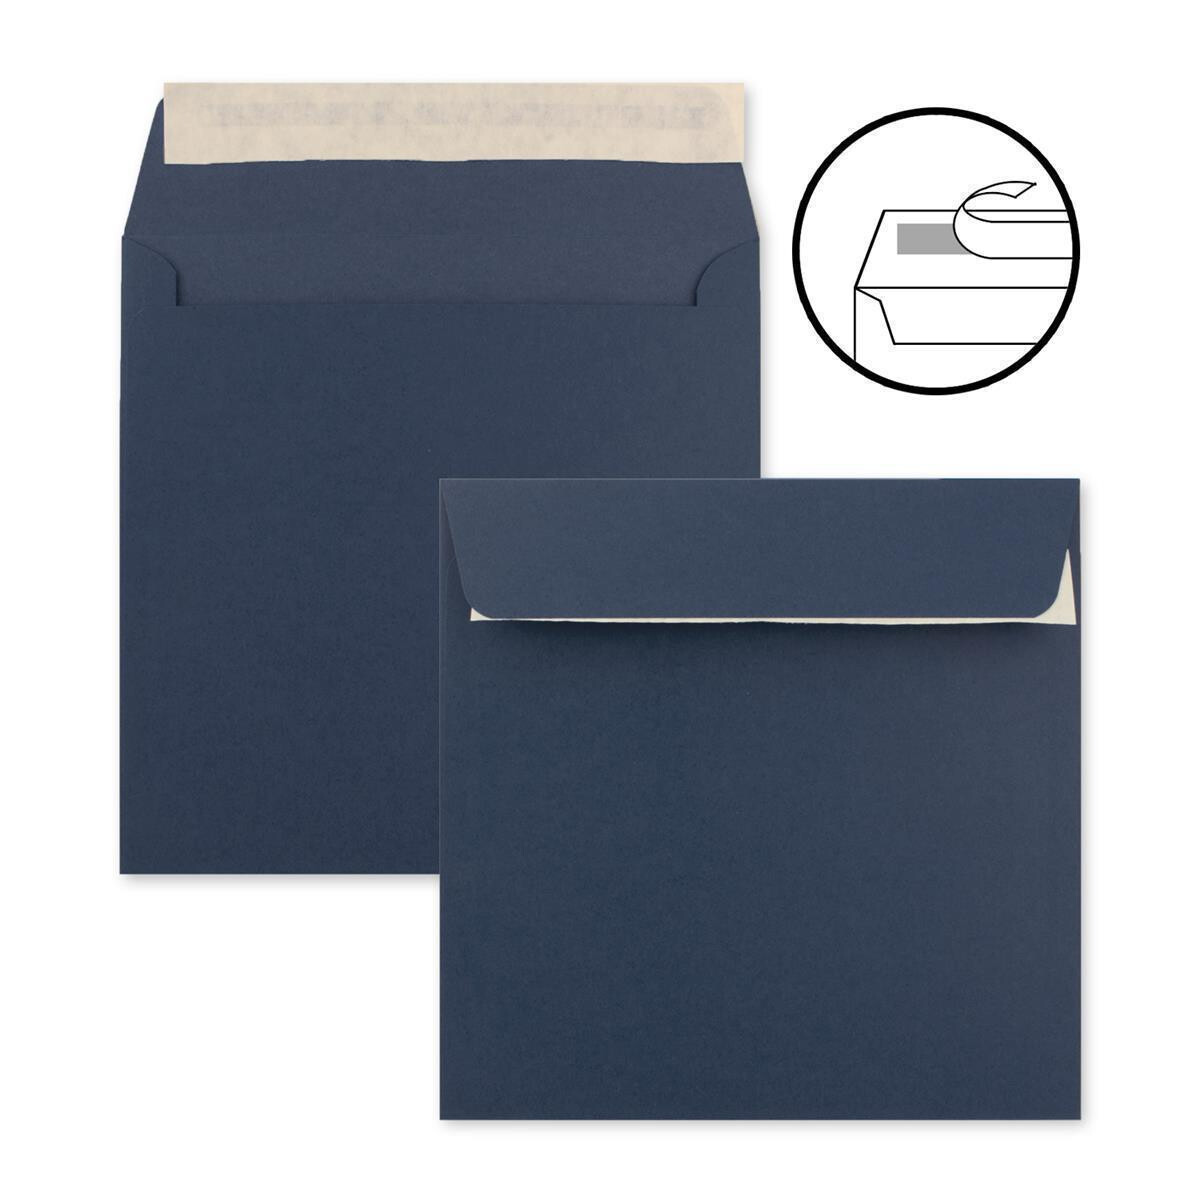 Blau Briefumschläge Quadrat Briefumschlag Kuvert Briefkuvert Umschlag 